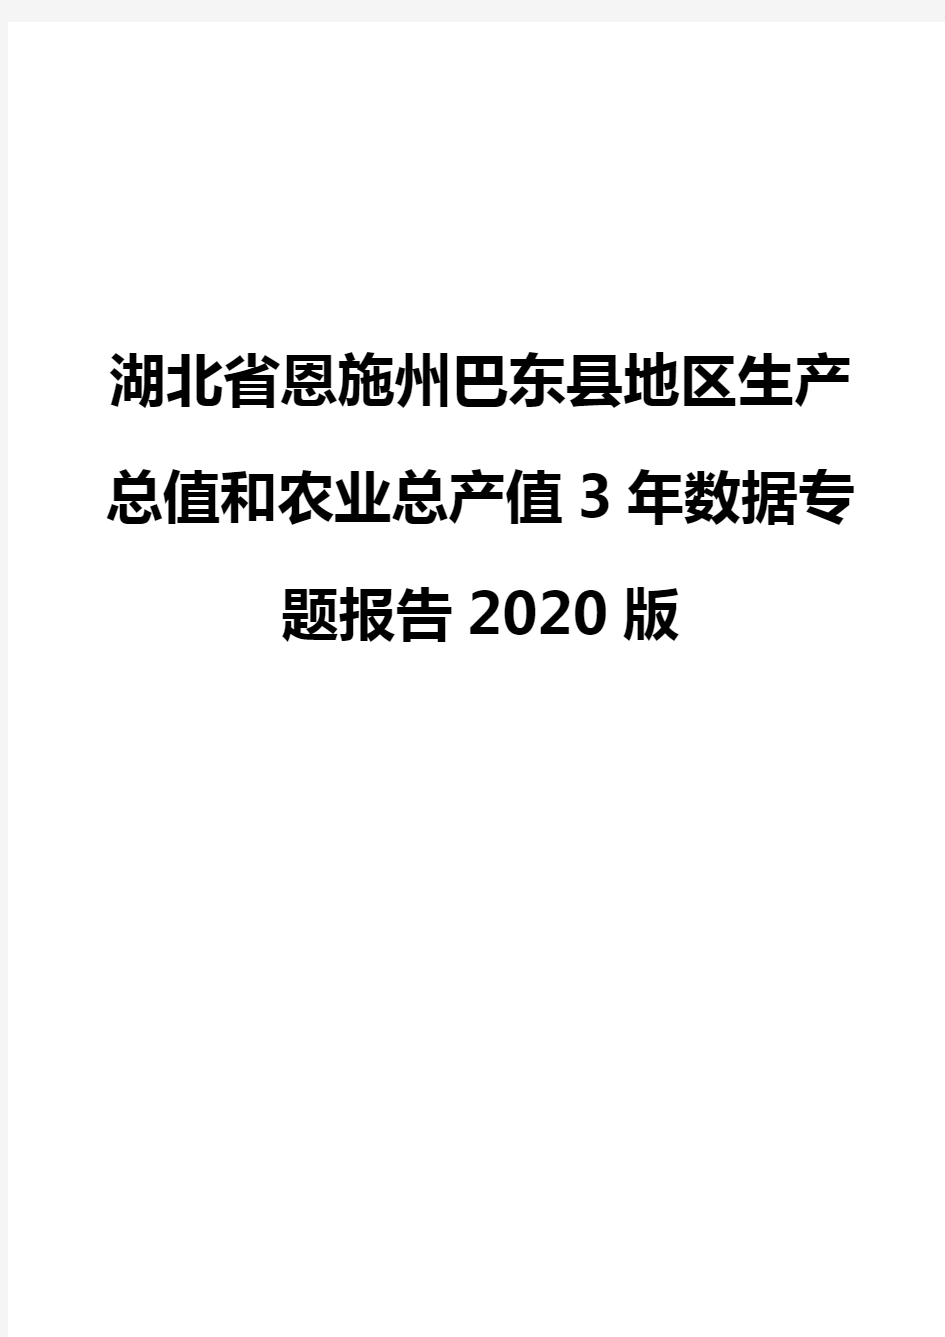 湖北省恩施州巴东县地区生产总值和农业总产值3年数据专题报告2020版